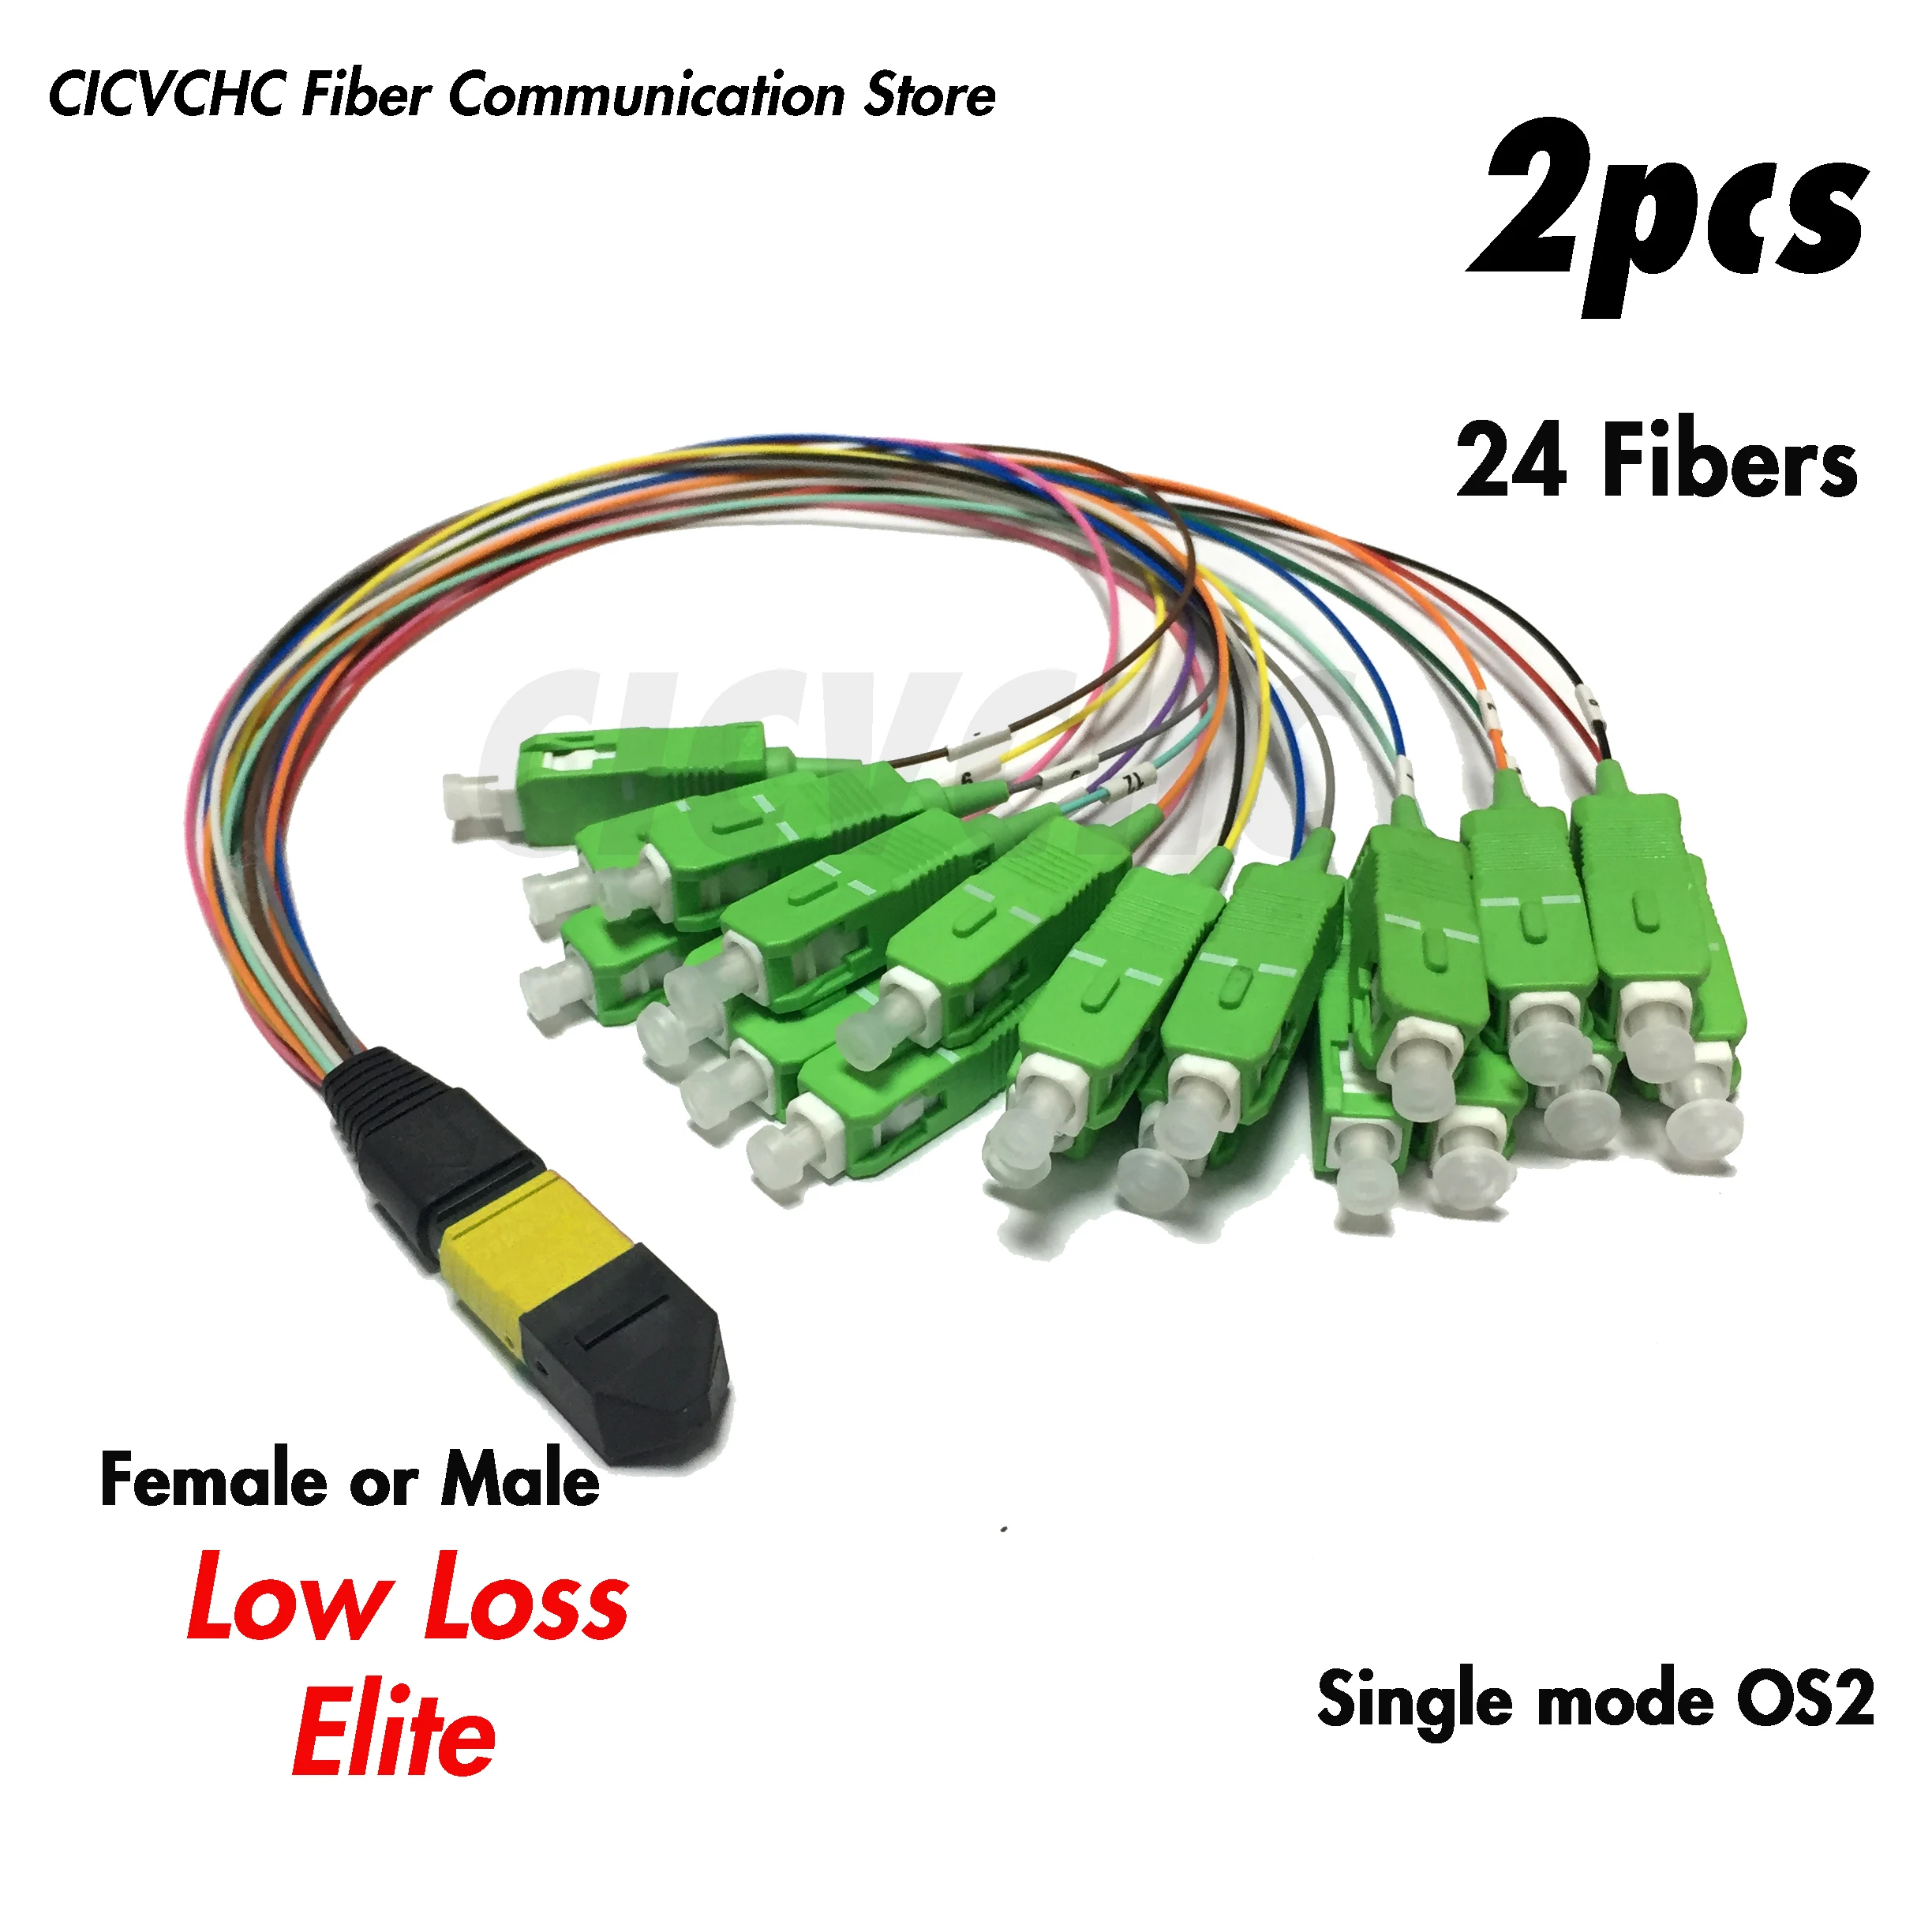 2pcs 24 Fibers MPO/APC - SC/APC-Harness cable-SM G657A2-Male/Female-Elite/Low loss-0.35m